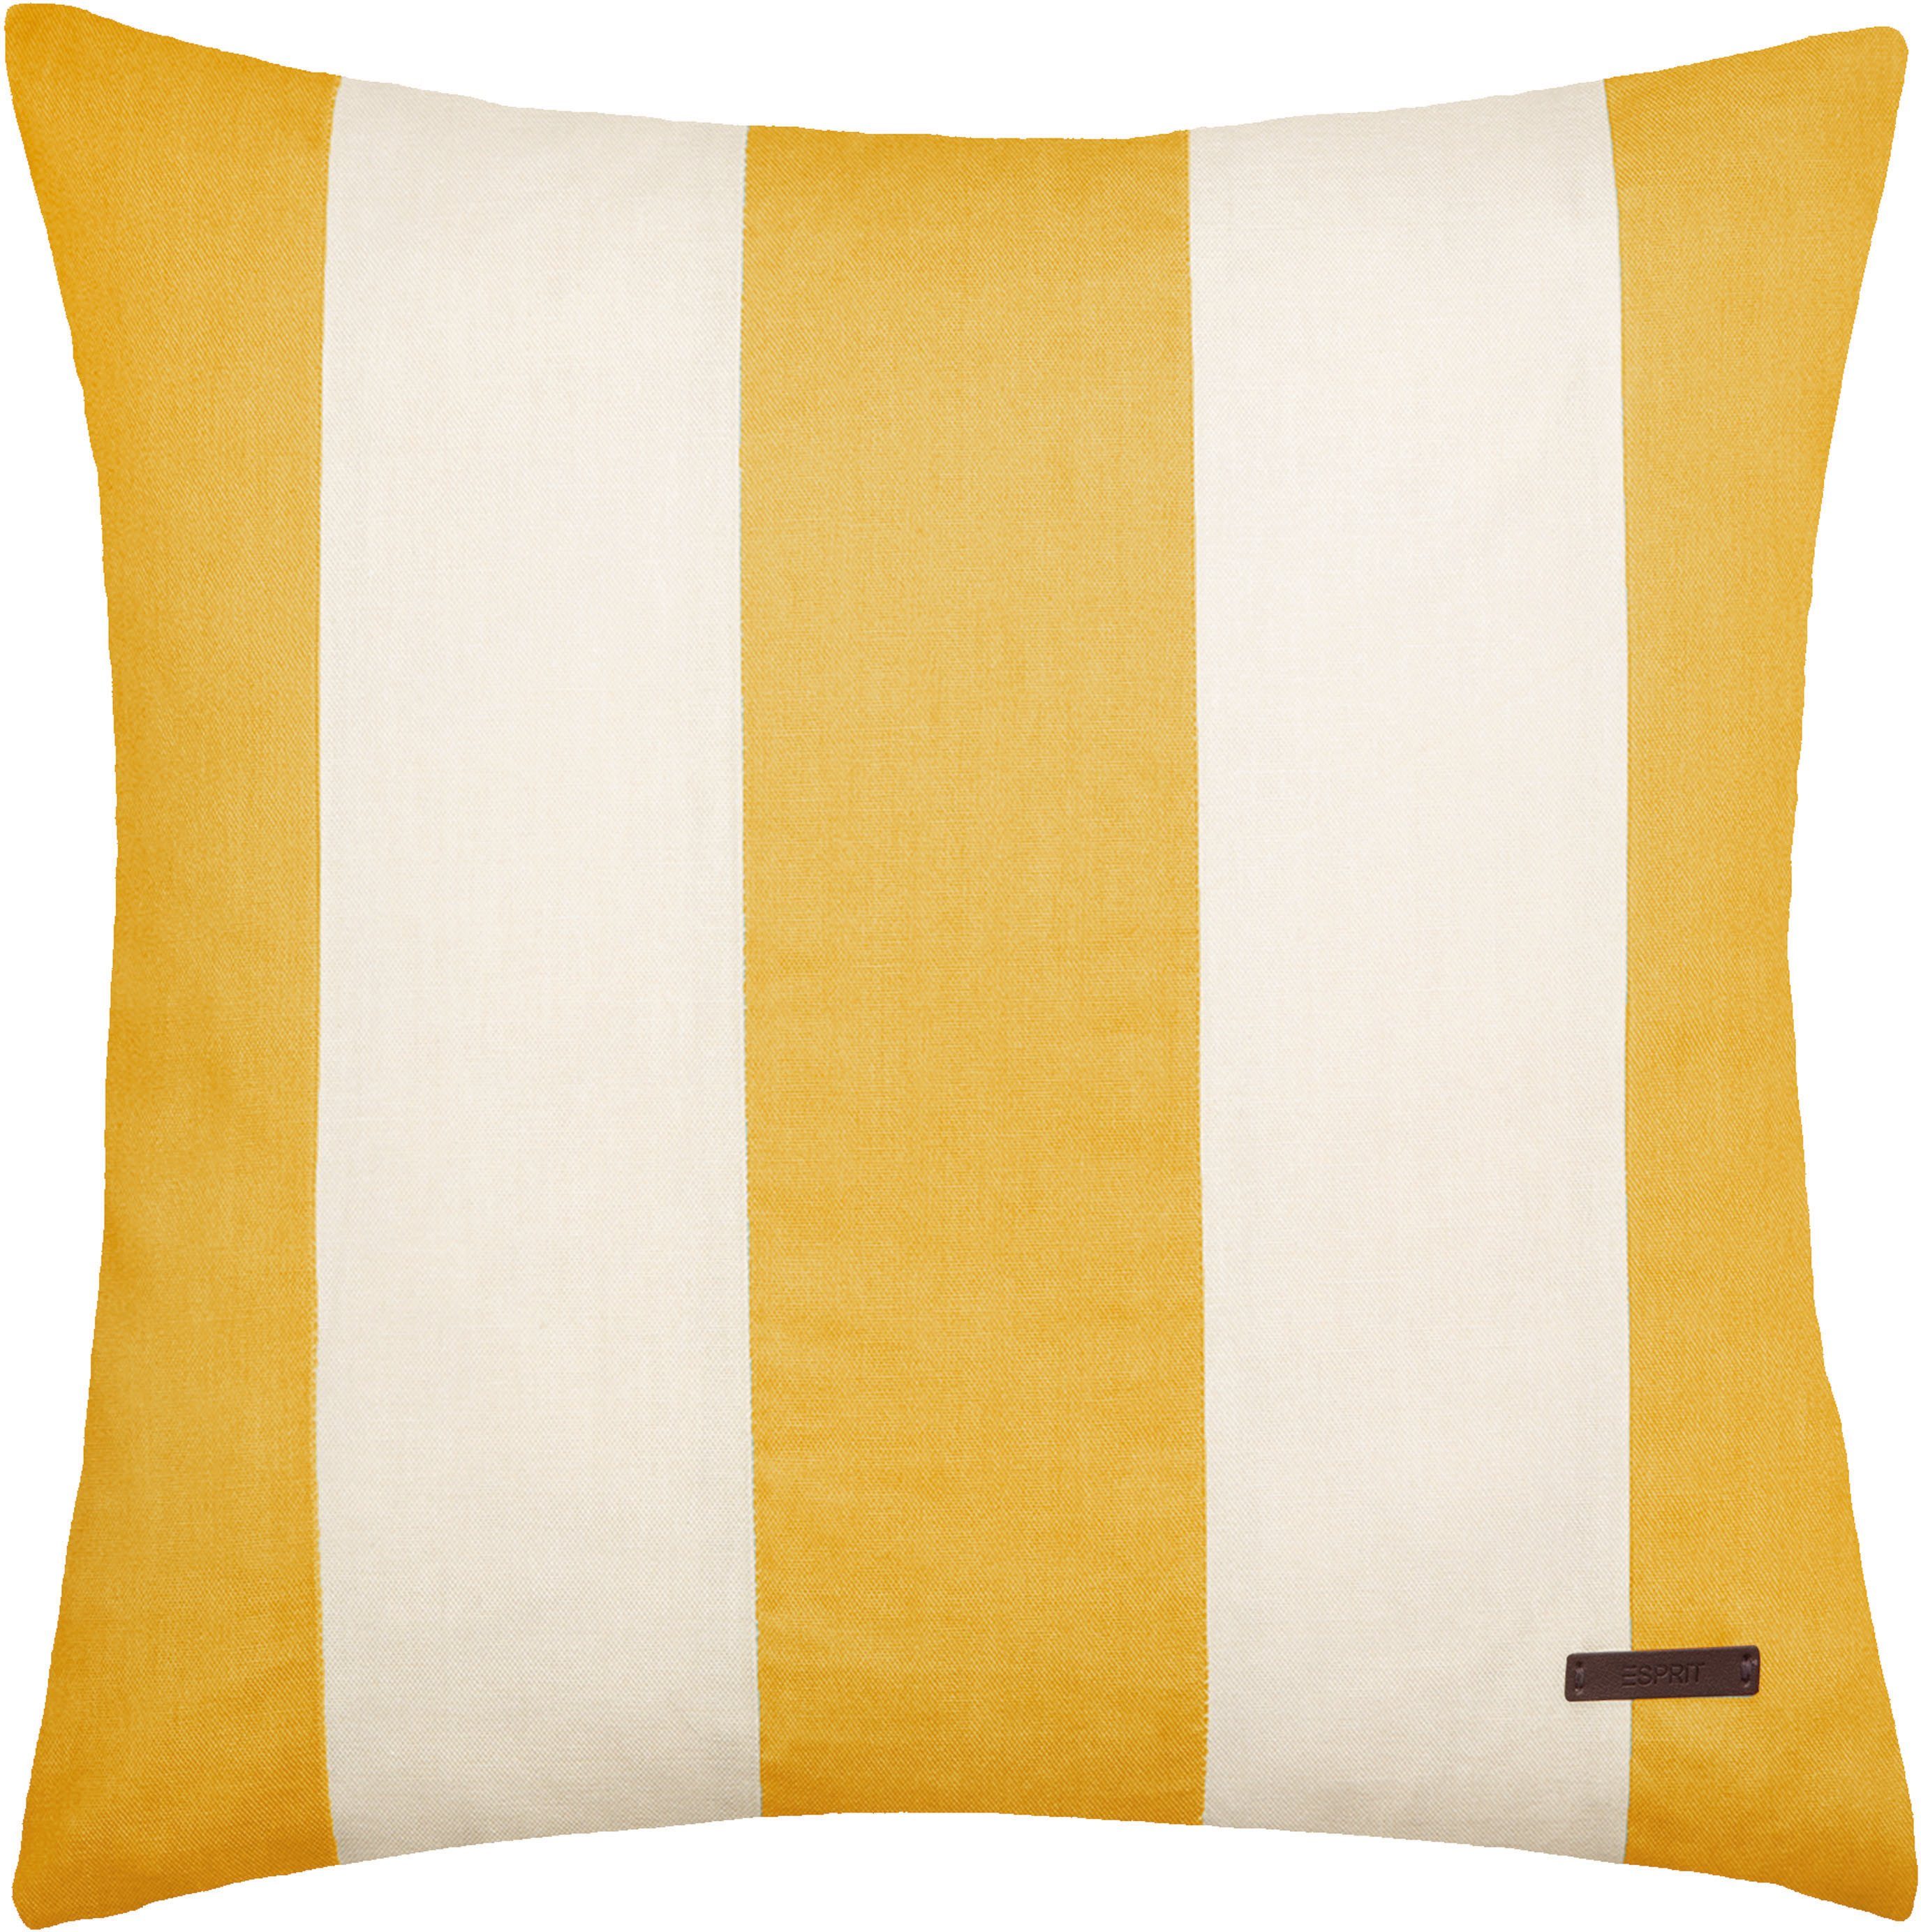 Esprit Dekokissen Neo Stripe, mit Streifen, Kissenhülle ohne Füllung, 1 Stück honigfarben/gelb/caramel